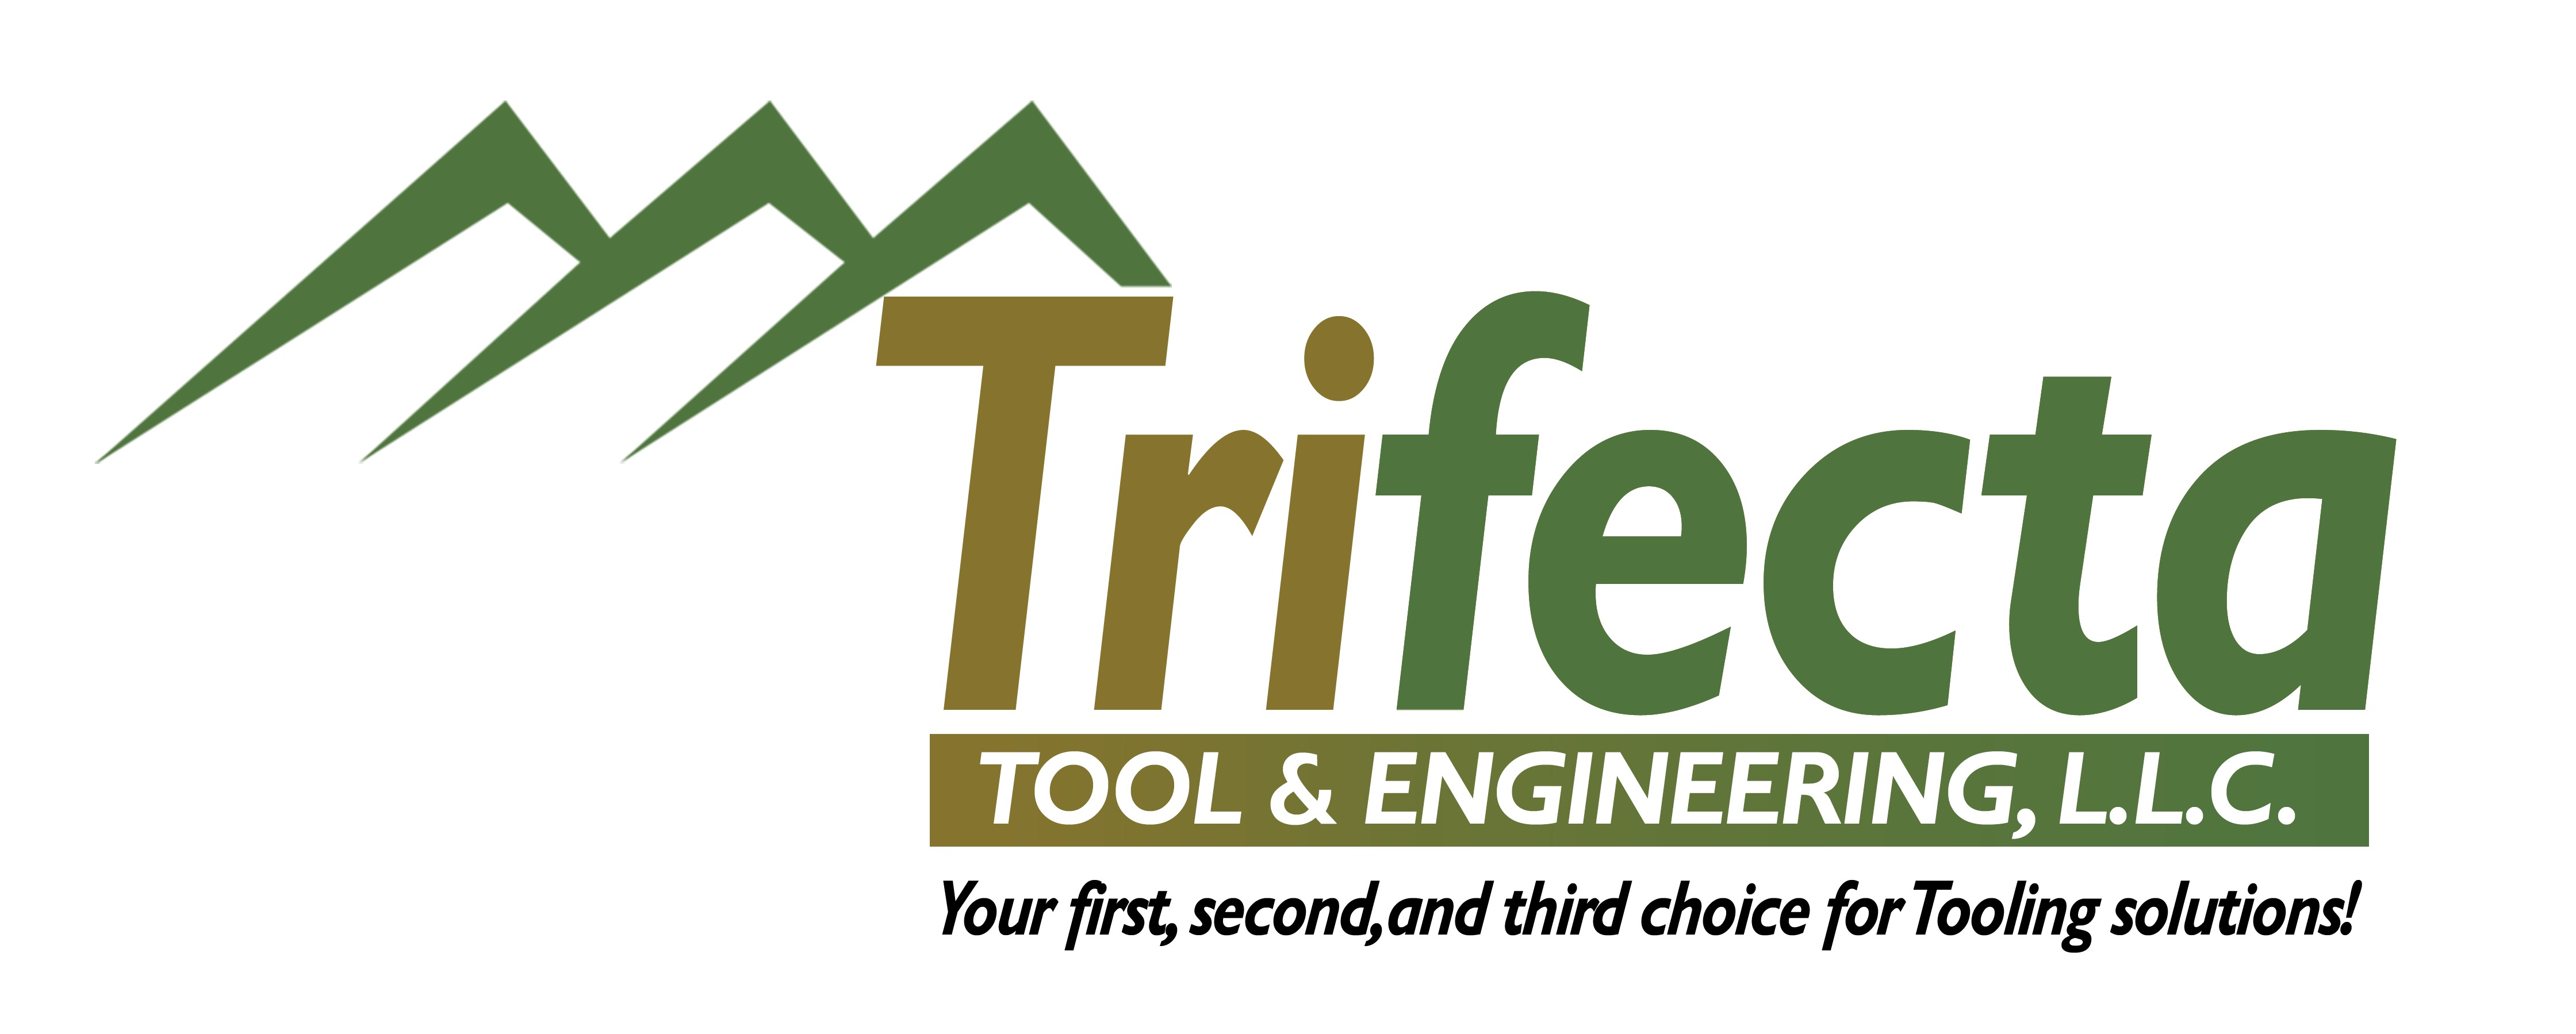 Trifecta-new logo-11-11-20